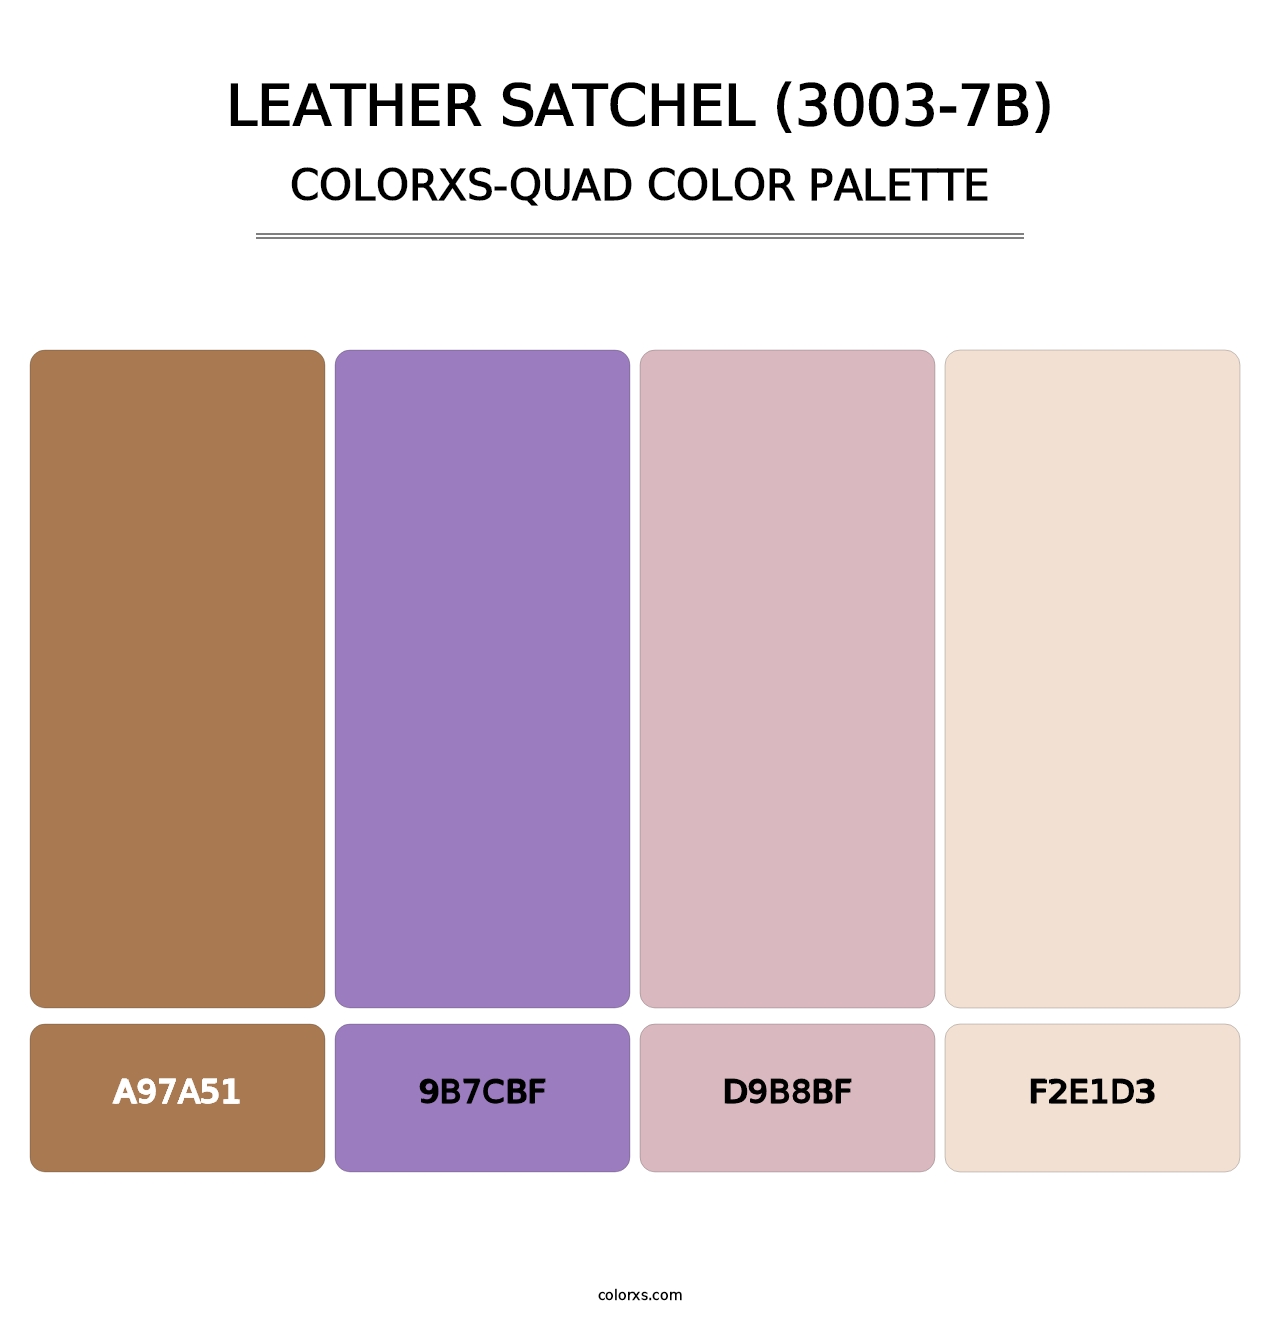 Leather Satchel (3003-7B) - Colorxs Quad Palette